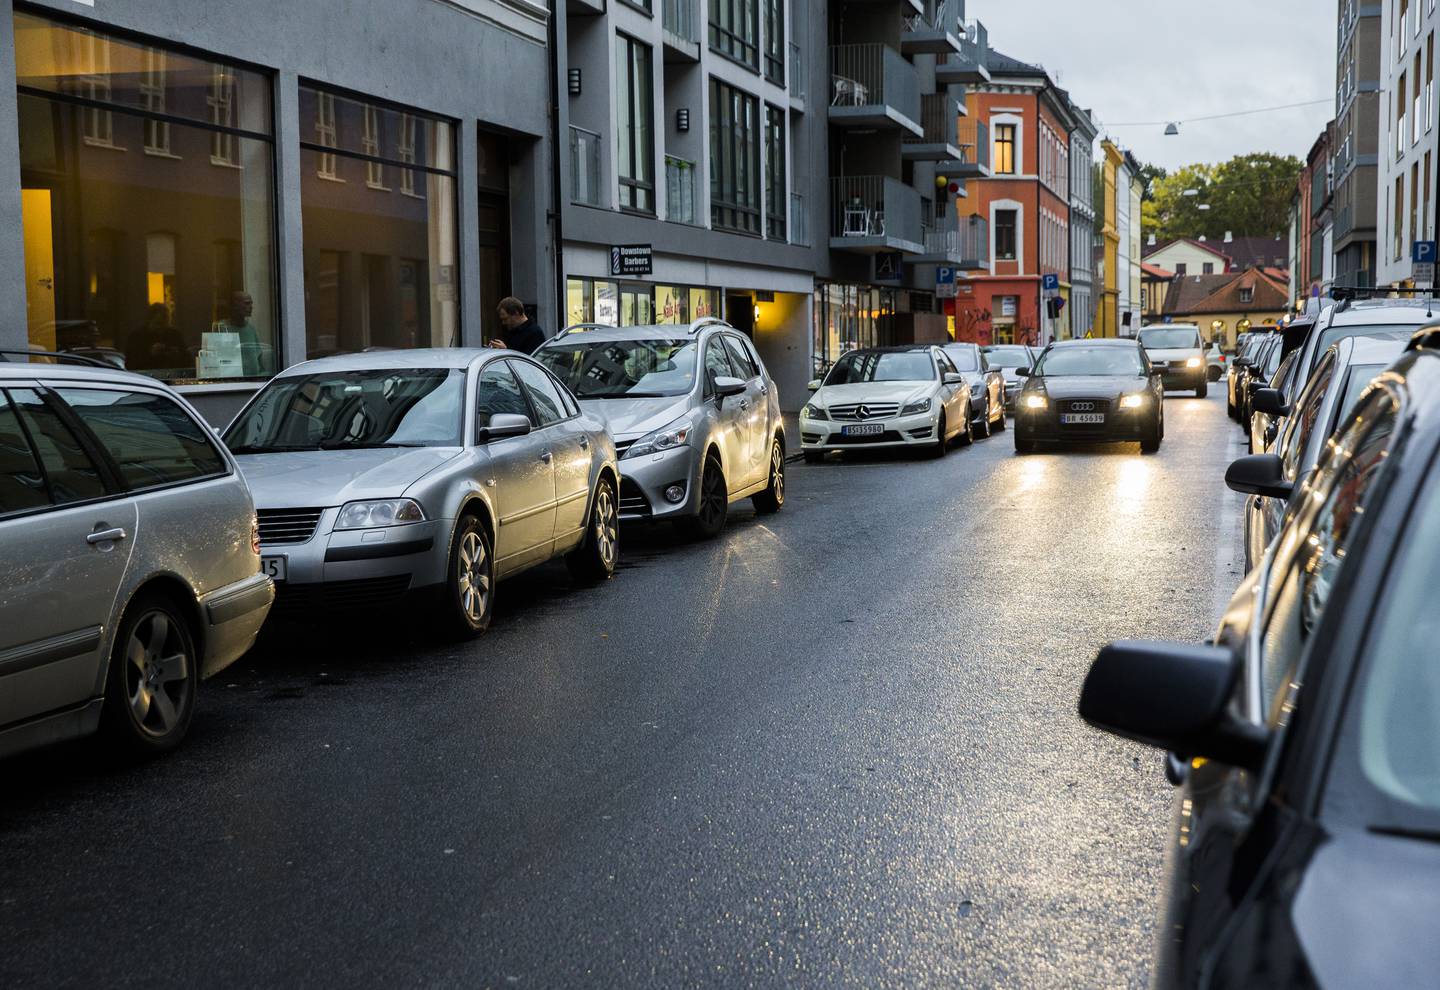 En gjennomsnittlig bil står parkert i opp mot 97 prosent av tida, ifølge flere undersøkelser. Også dette er et argument mot privatbilen i Oslo, mener byråd Sirin Hellvin Stav.